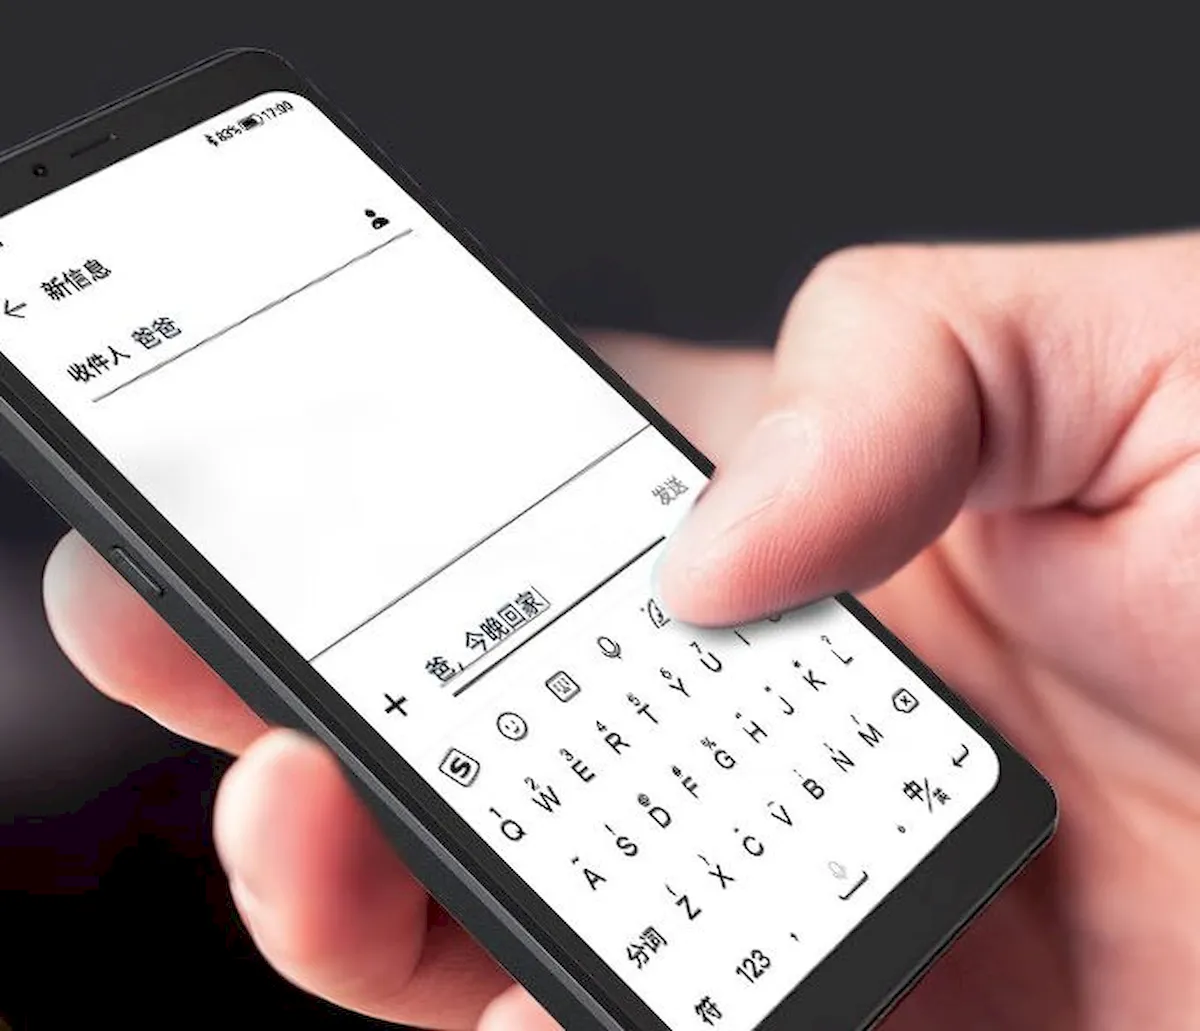 Hisense Hi Reader Pro, um smartphone Android com tela E Ink